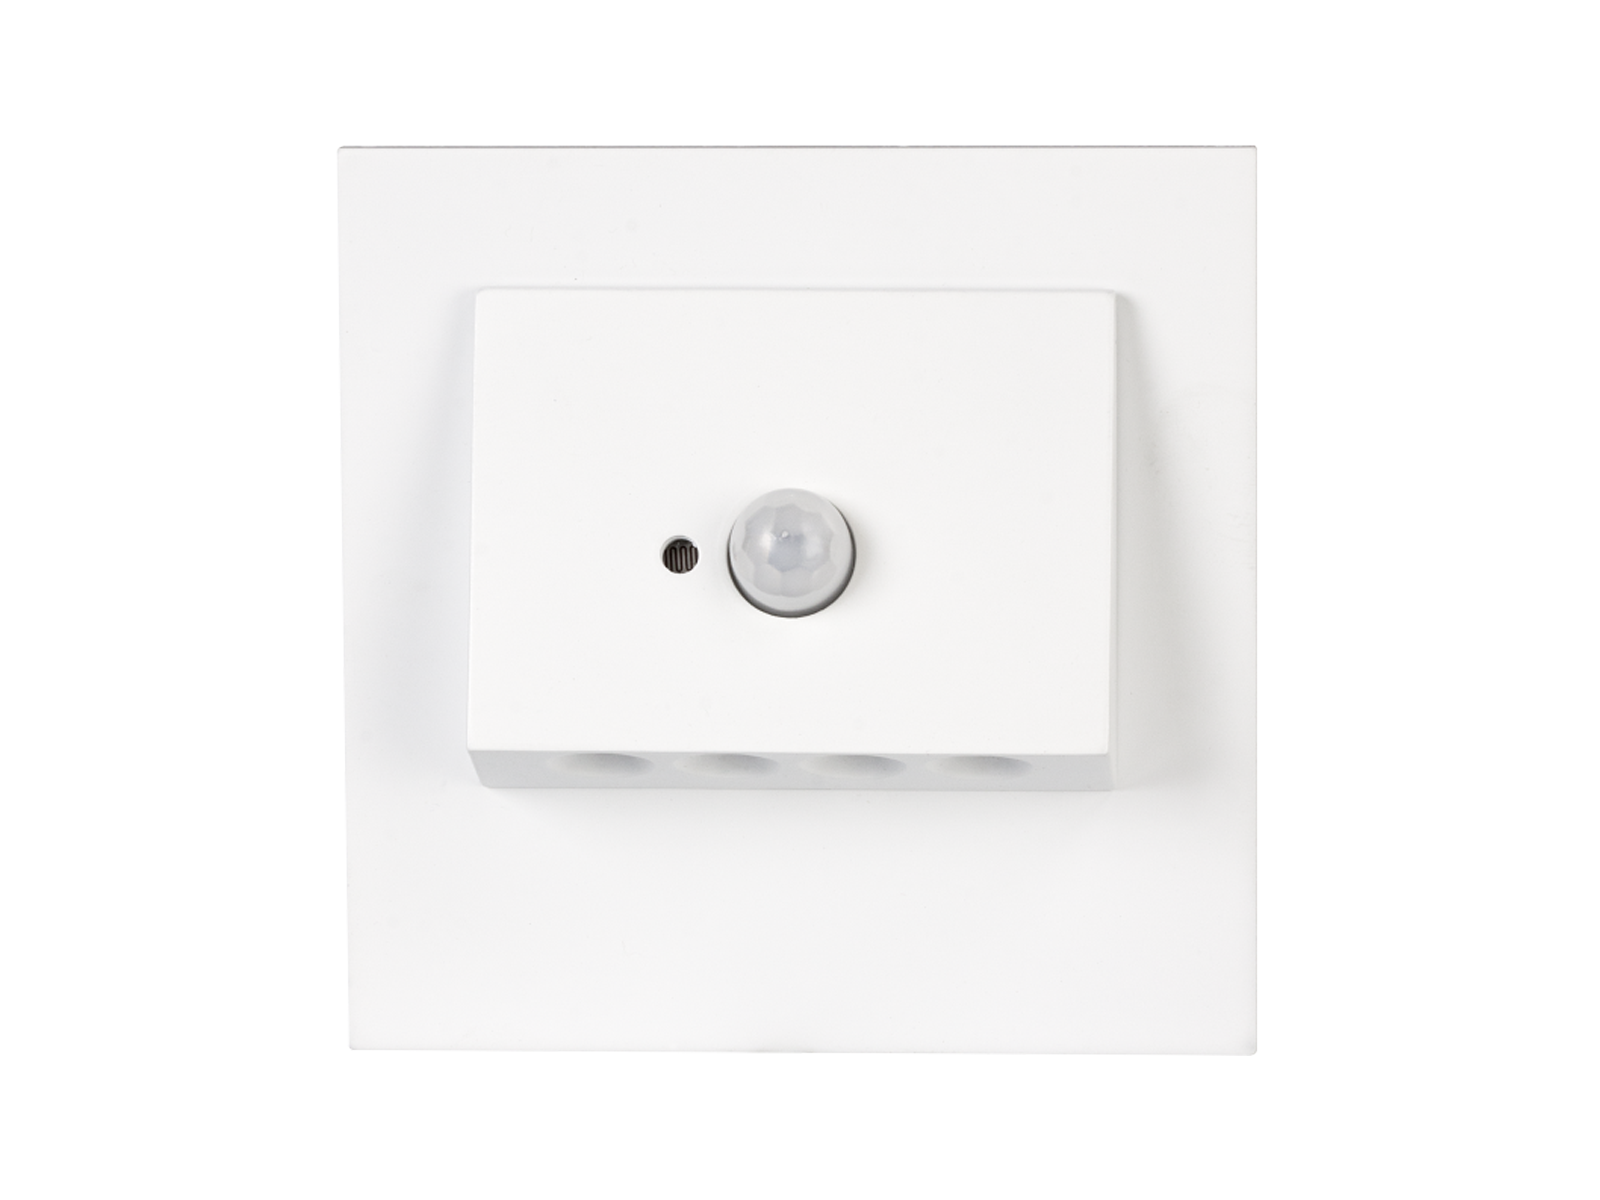 Svítidlo LED se senzorem do KU krabice LEDIX NAVI 230 V AC, bílé, teplá bílá, IP20